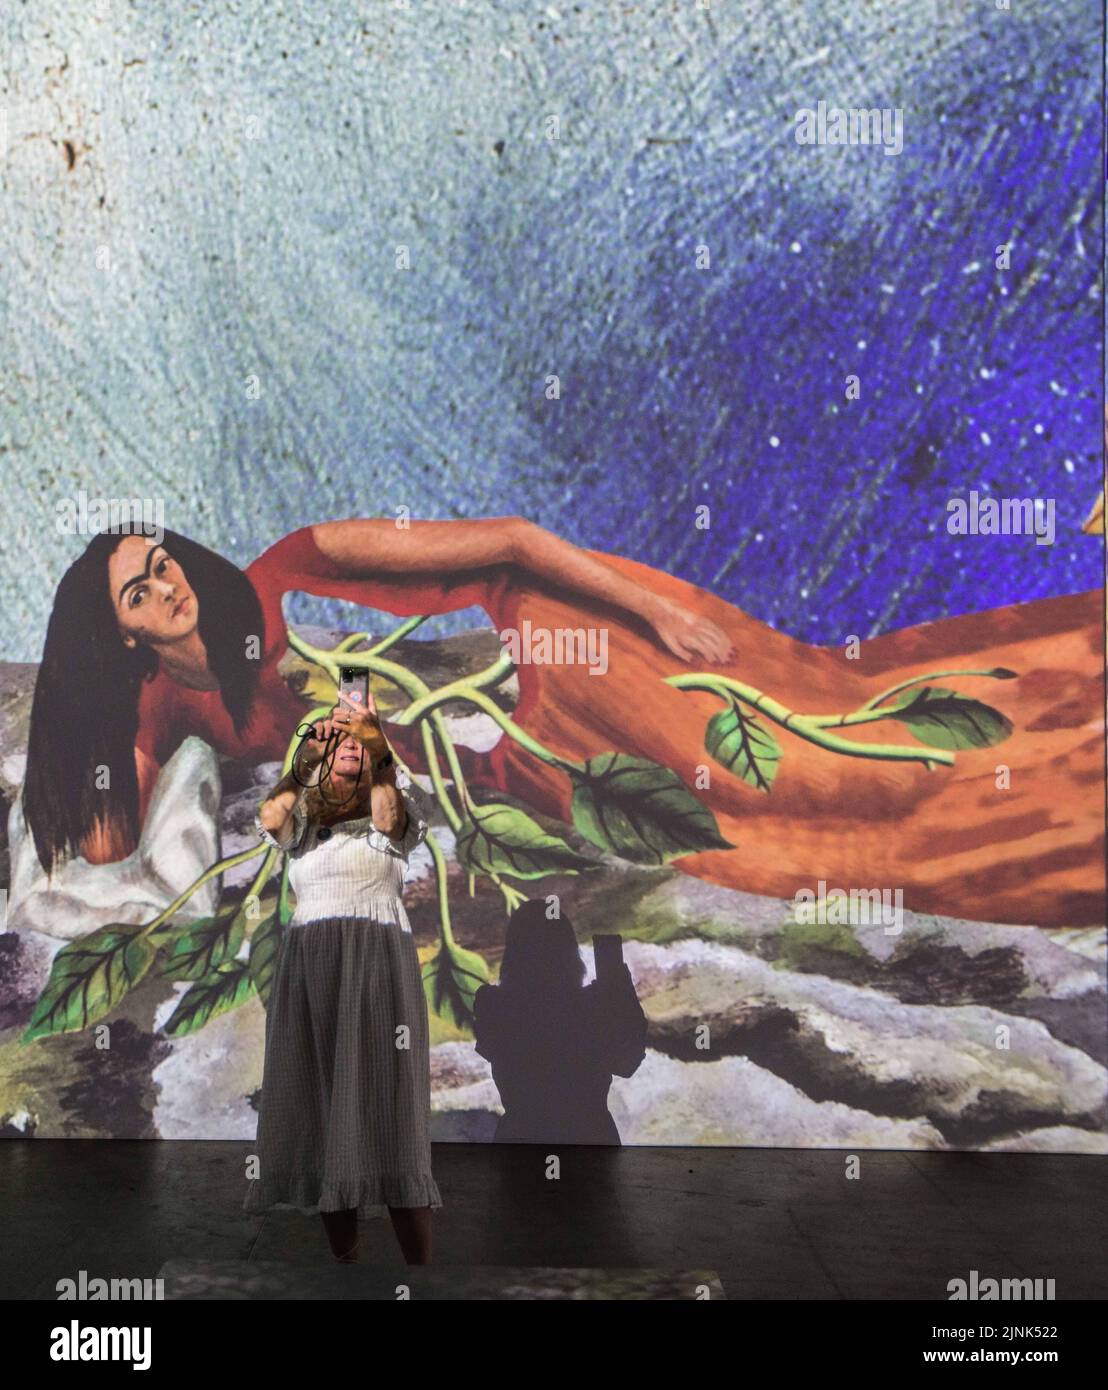 Londres Reino Unido 12 de agosto de 2021 Frida Kahlo y Diego Rivera, dos de los pintores más grandes de la historia de México. Su obra captura belleza, amor y emociones profundas, y se puede ver sus pinturas cobran vida en el deslumbrante arte. Dock X en Canada Water hasta finales de octubre de 2022.,Paul Quezada-Neiman/Alamy Live News Foto de stock